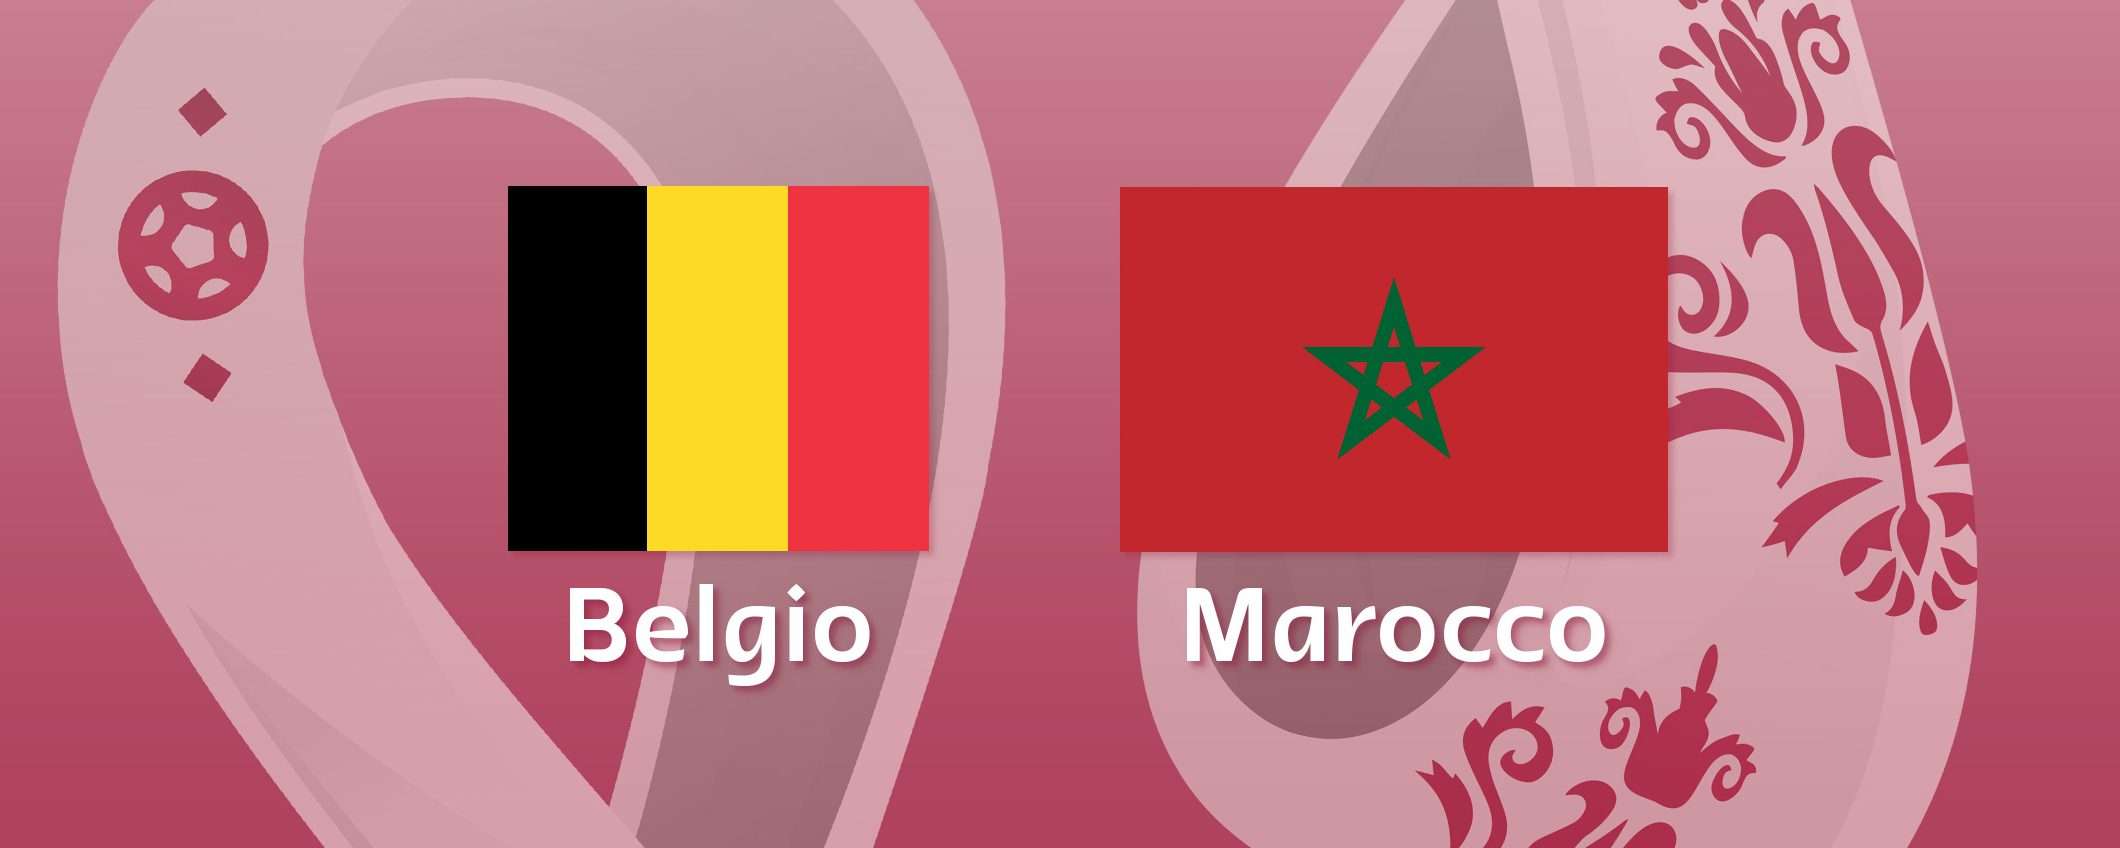 Come vedere Belgio-Marocco in streaming